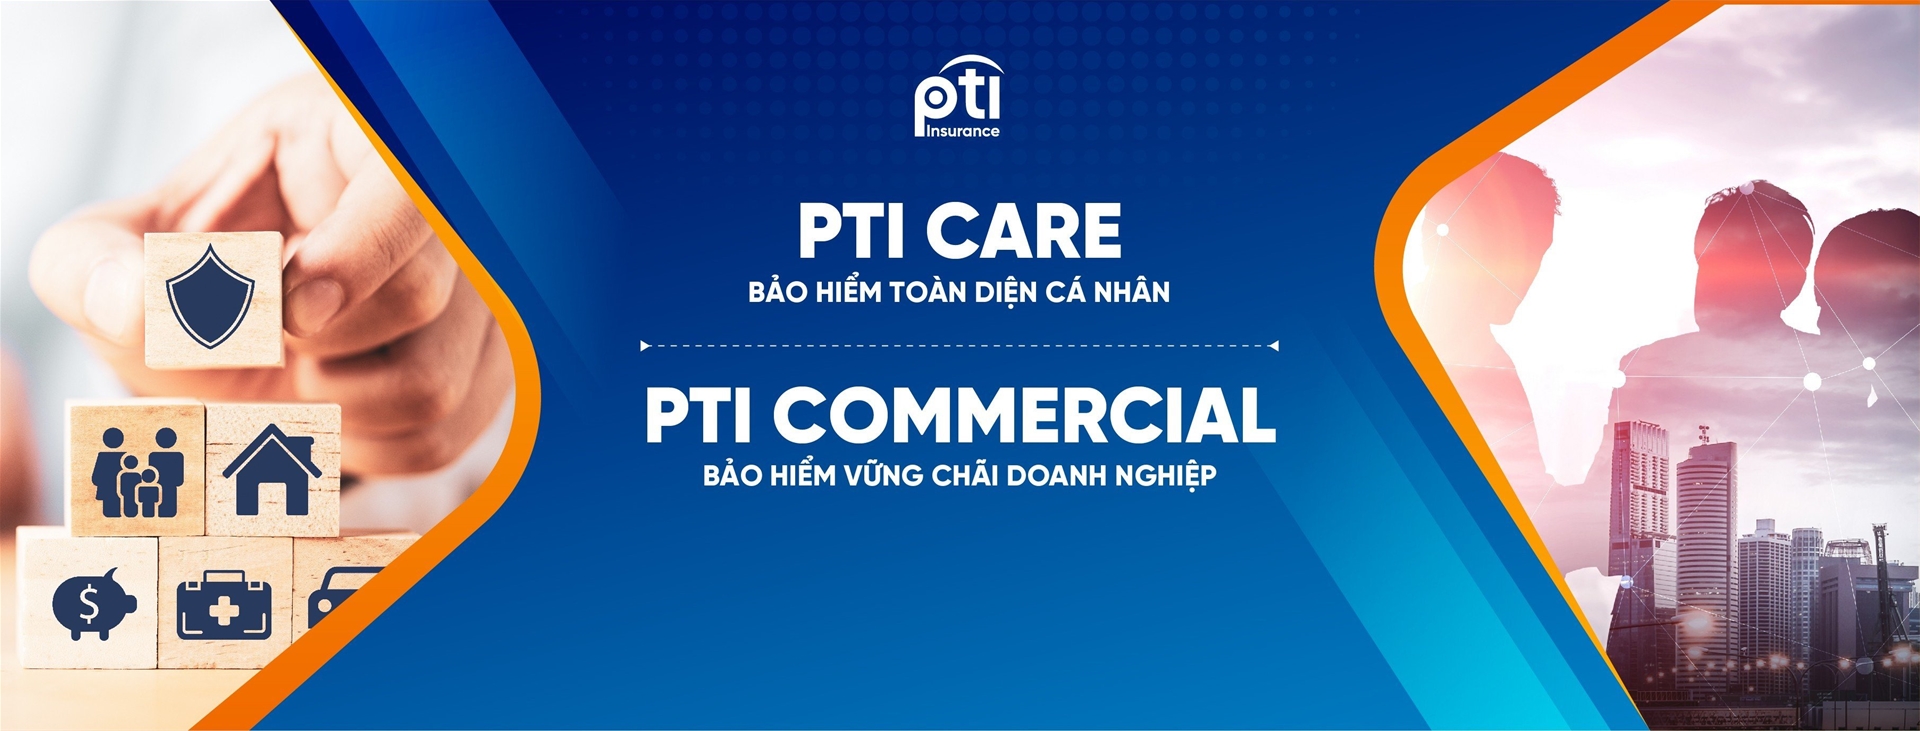 Mẫu giấy yêu cầu trả tiền bảo hiểm PTI Care | PTI.COM.VN ::..